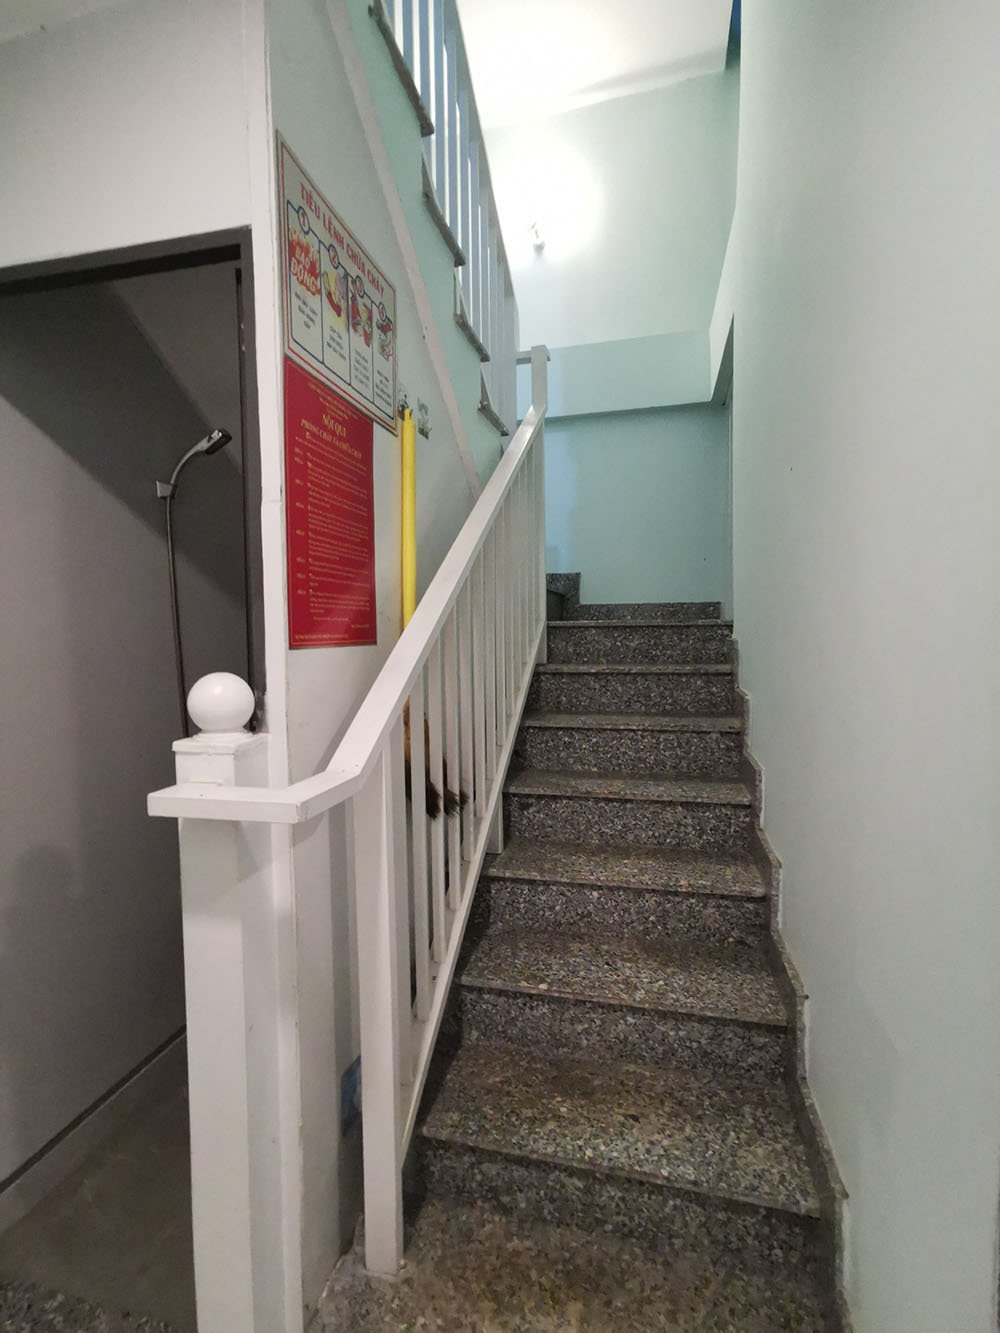 Bán nhà Núi Thành, Quận Tân Bình 3 lầu - 11 phòng full n.thất, thang máy,hẻm 6m, có HĐ thuê 45tr/th